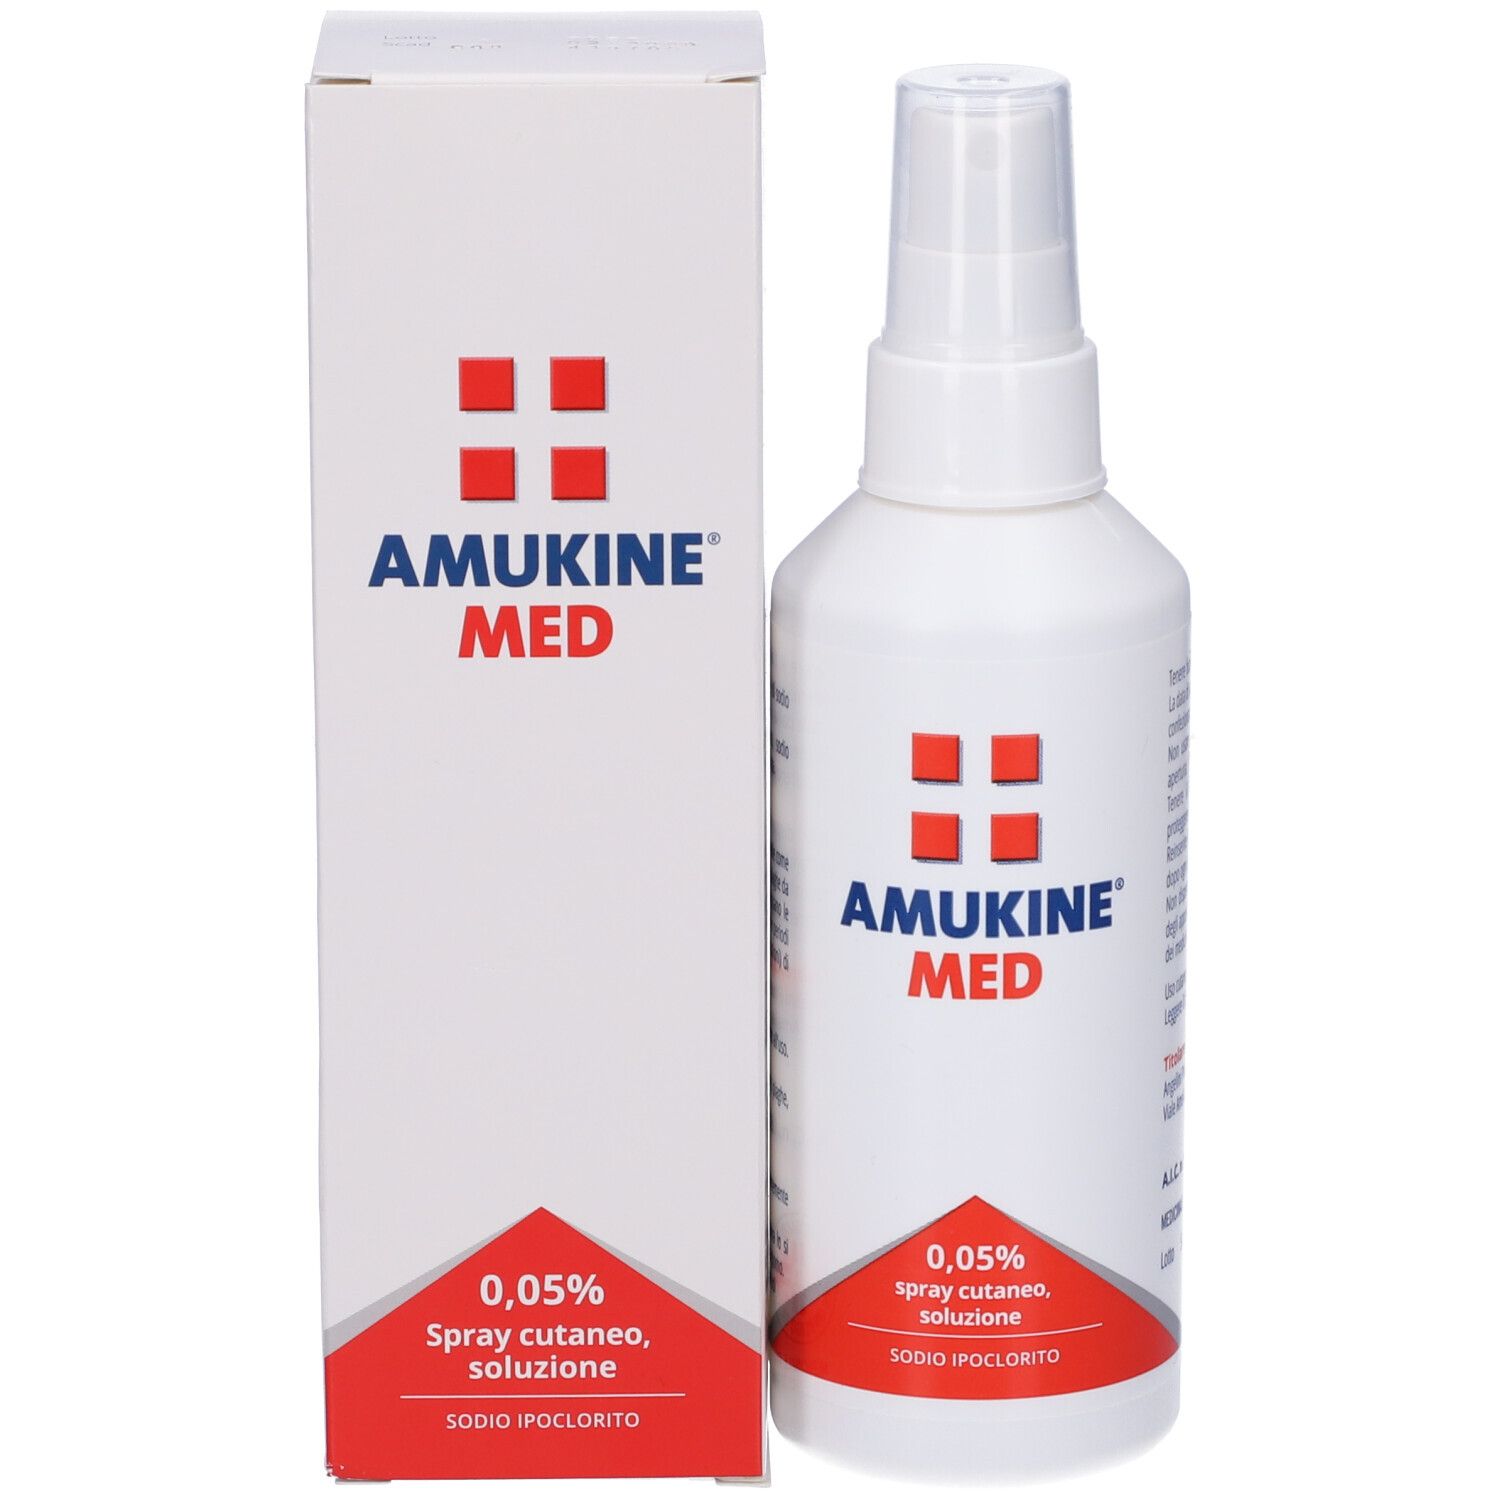 AMUKINE MED 0,05% Spray cutaneo, soluzione